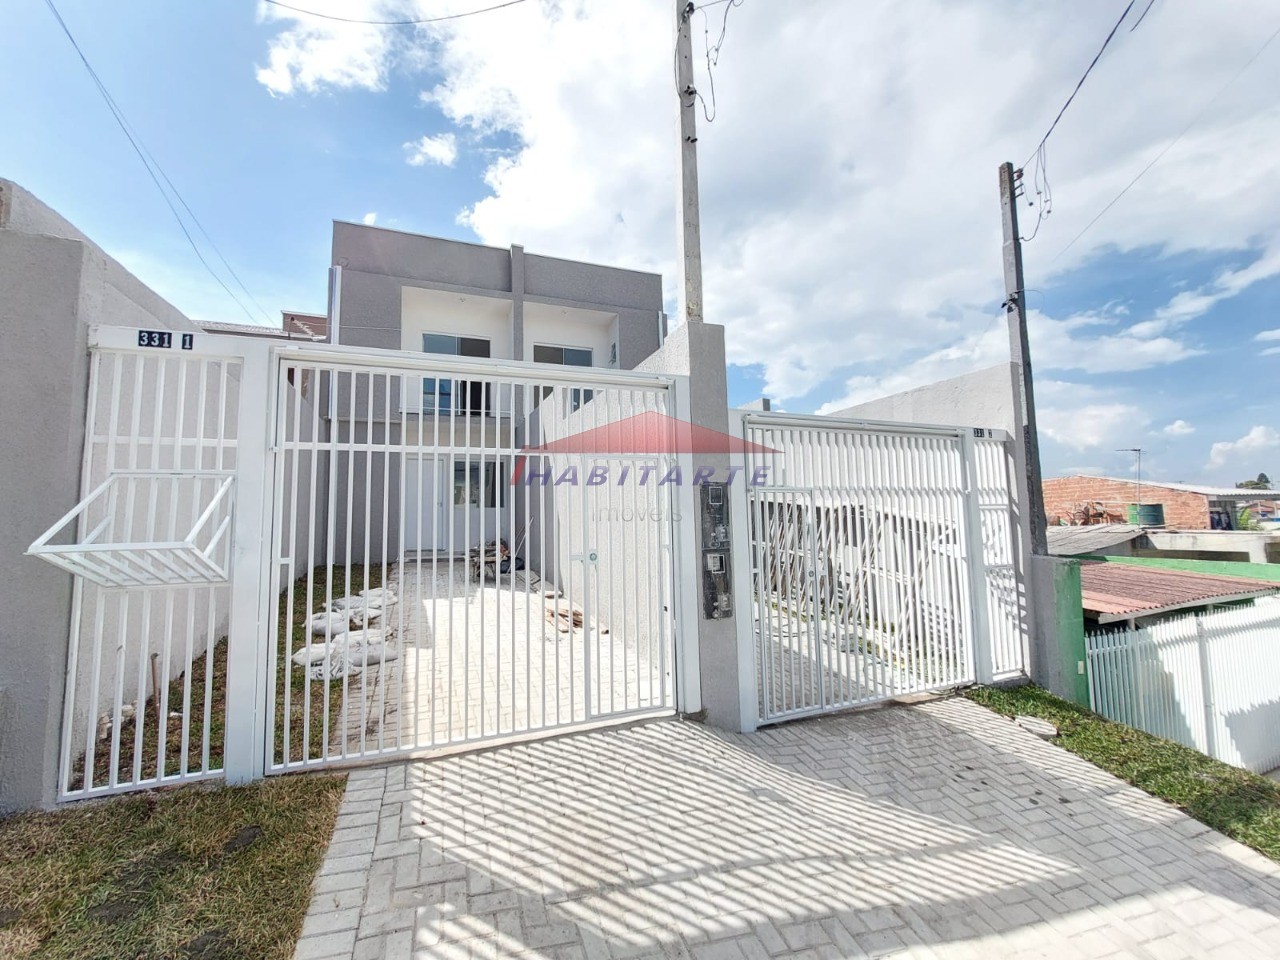 Sobrado com 3 quartos à venda no bairro Sítio Cercado em Curitiba